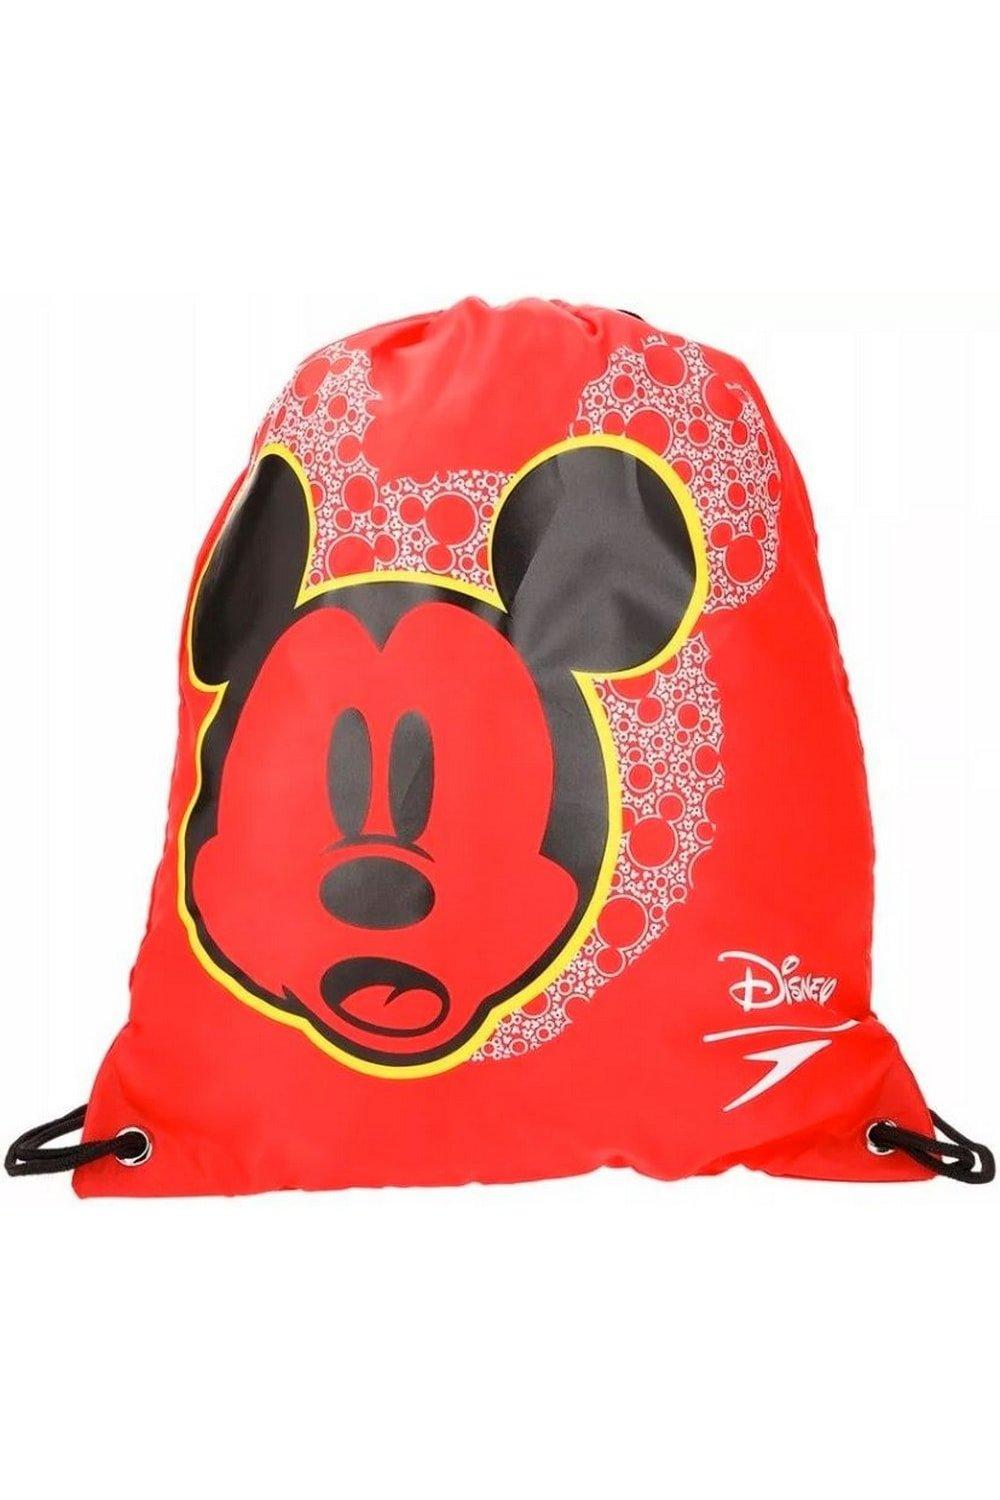 Сумка Mickey Mouse Speedo на шнурке Disney, красный сумка на плечо для девочек с изображением микки мауса из диснея